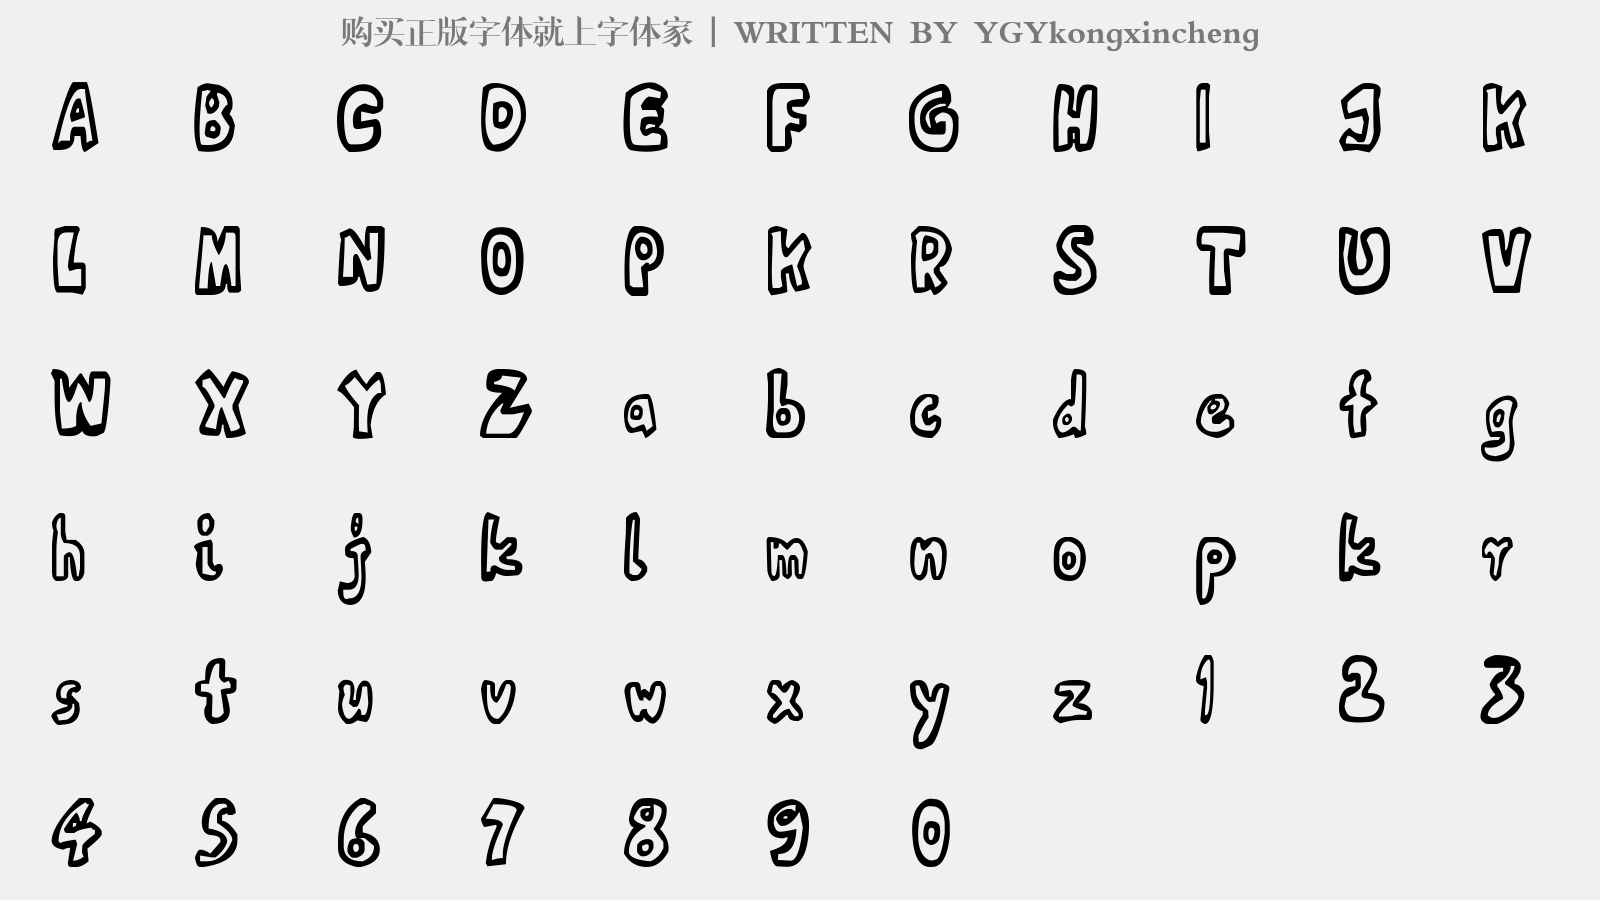 YGYkongxincheng - 大写字母/小写字母/数字